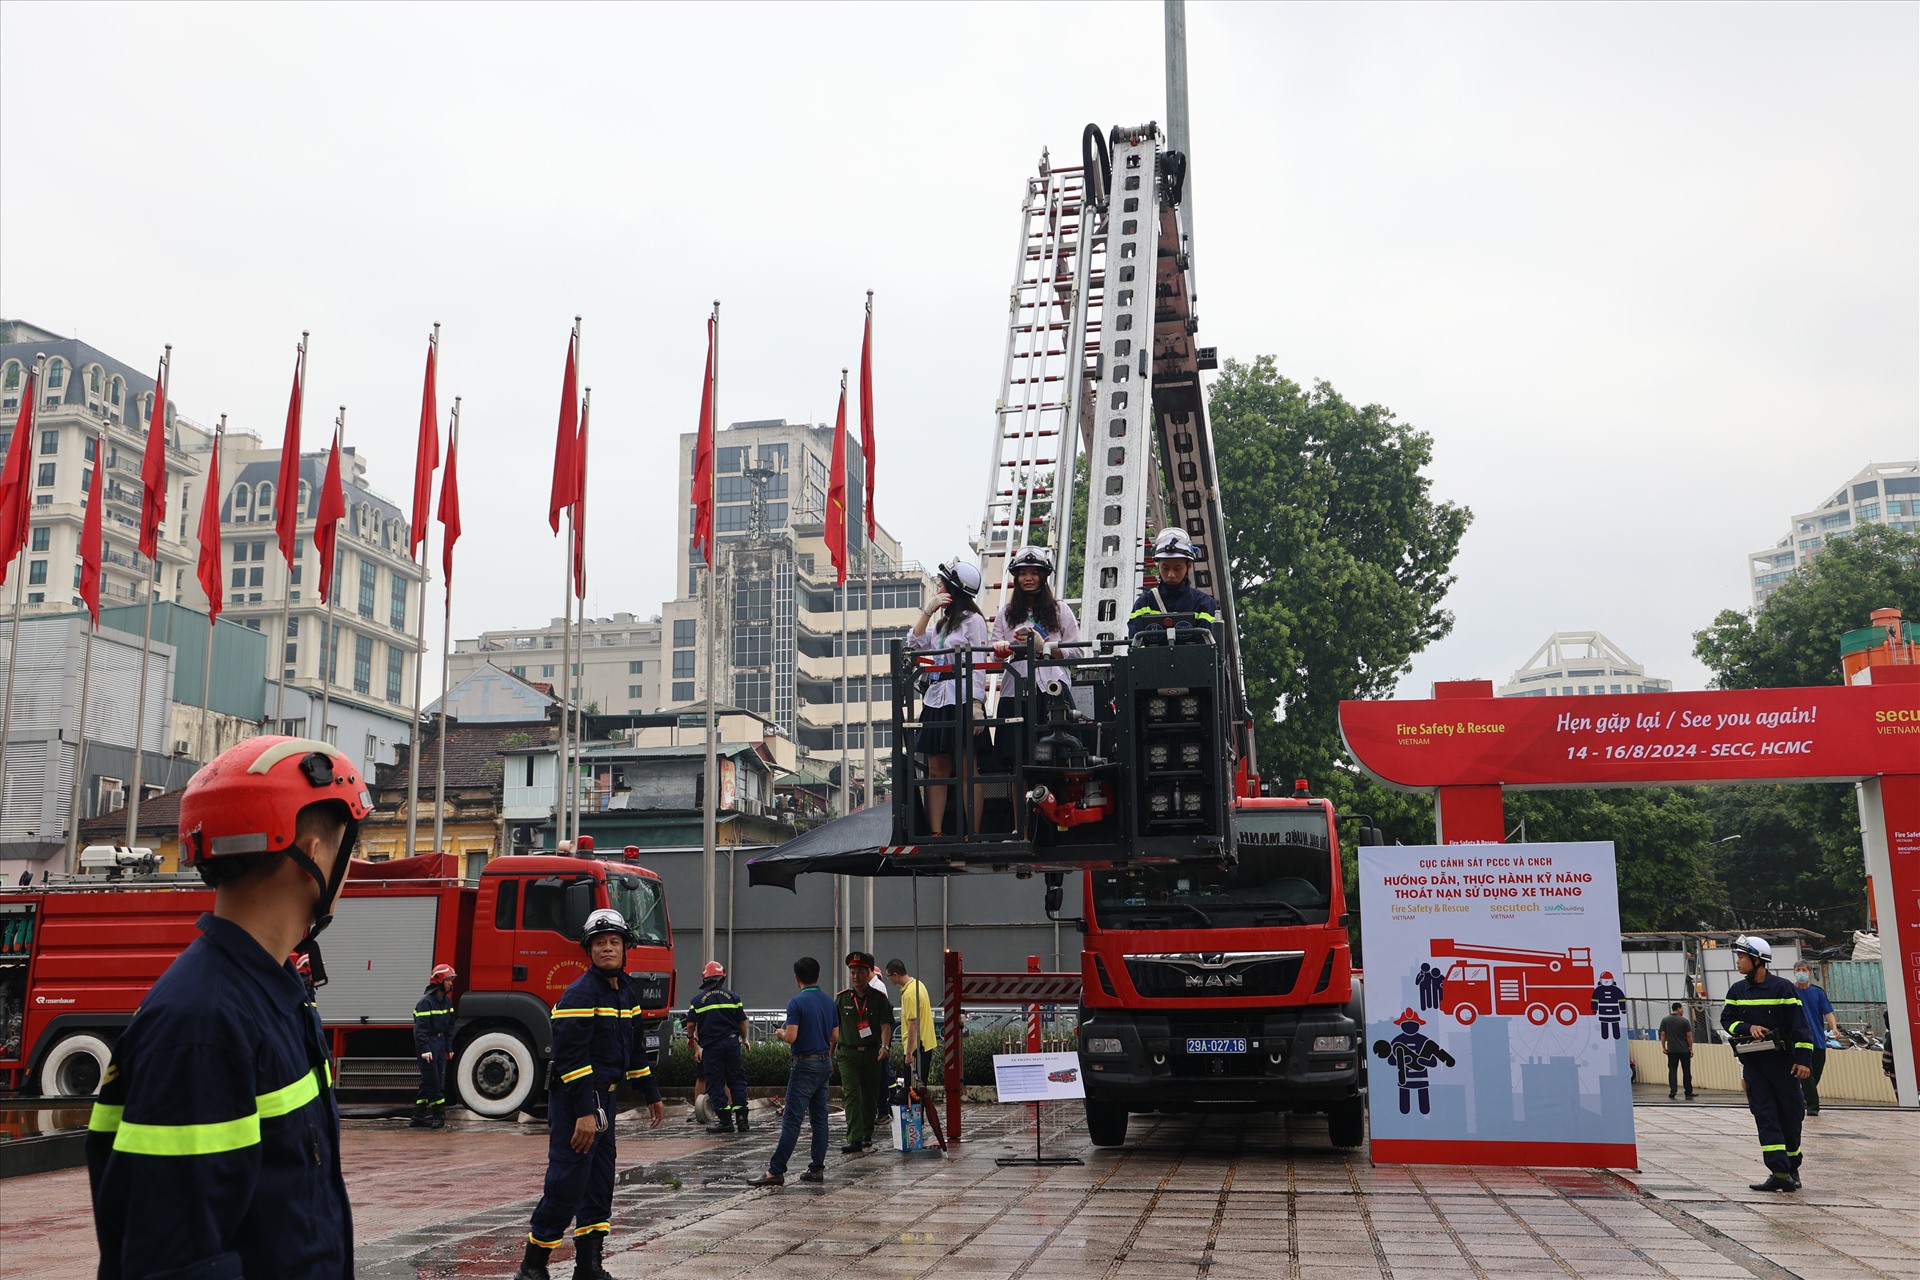 Triển lãm quốc tế về kỹ thuật và phương tiện phòng cháy, chữa cháy, cứu nạn, cứu hộ và thiết bị an ninh, an toàn bảo vệ năm 2023 diễn ra từ 19-21.7 tại Hà Nội